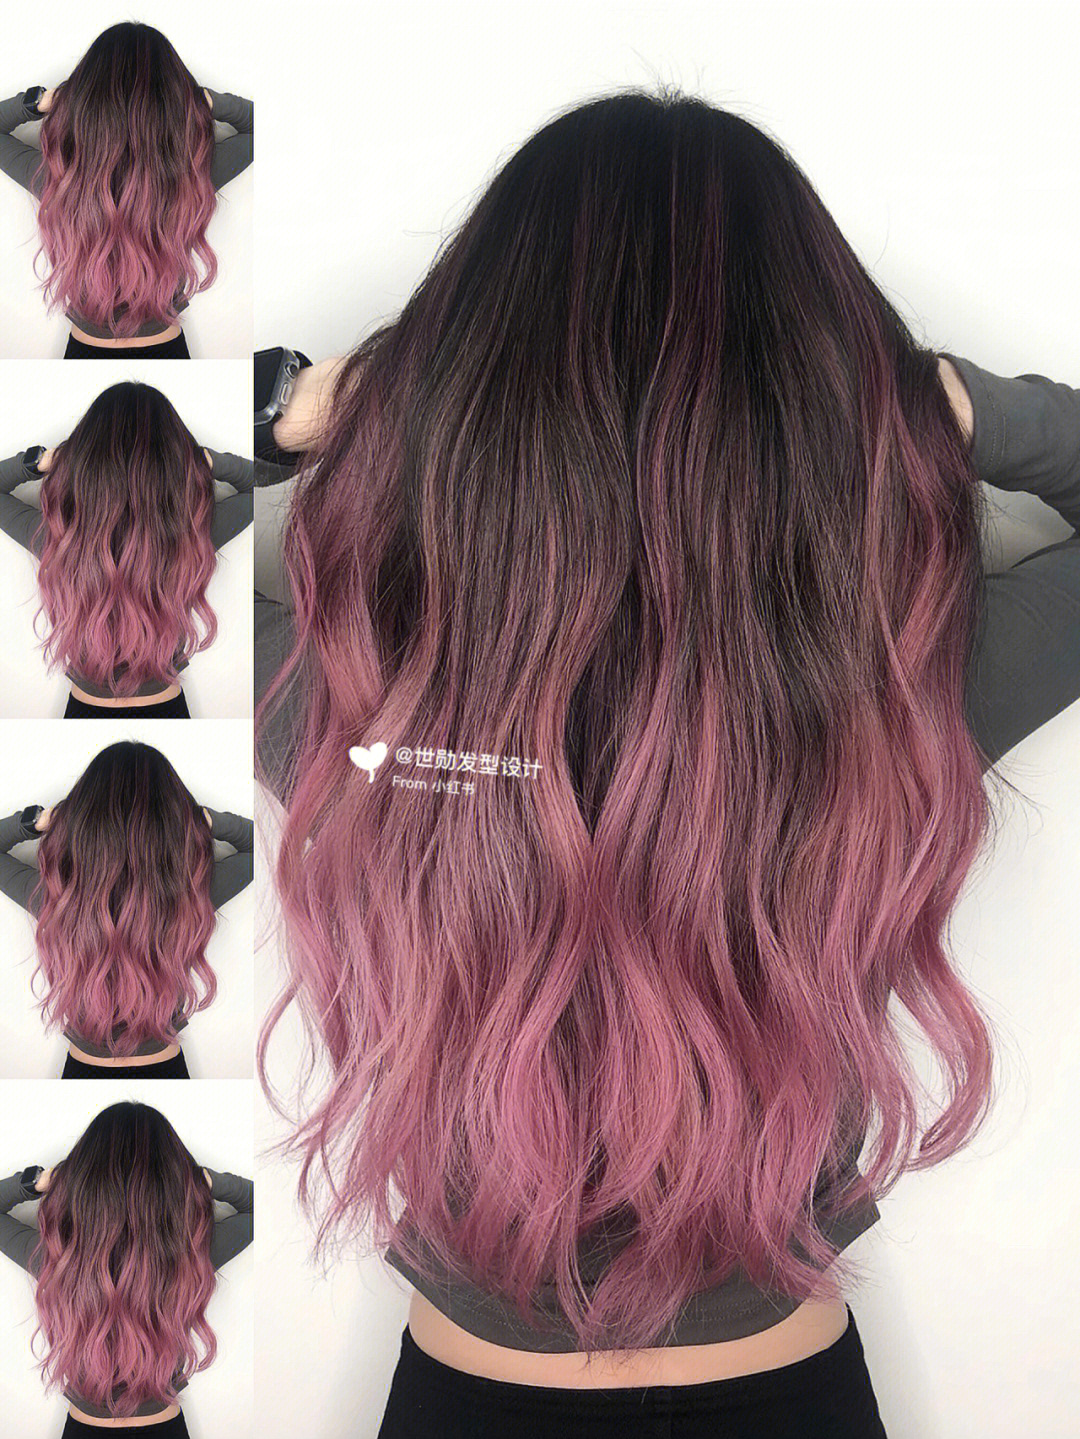 黑发挑染粉色图片